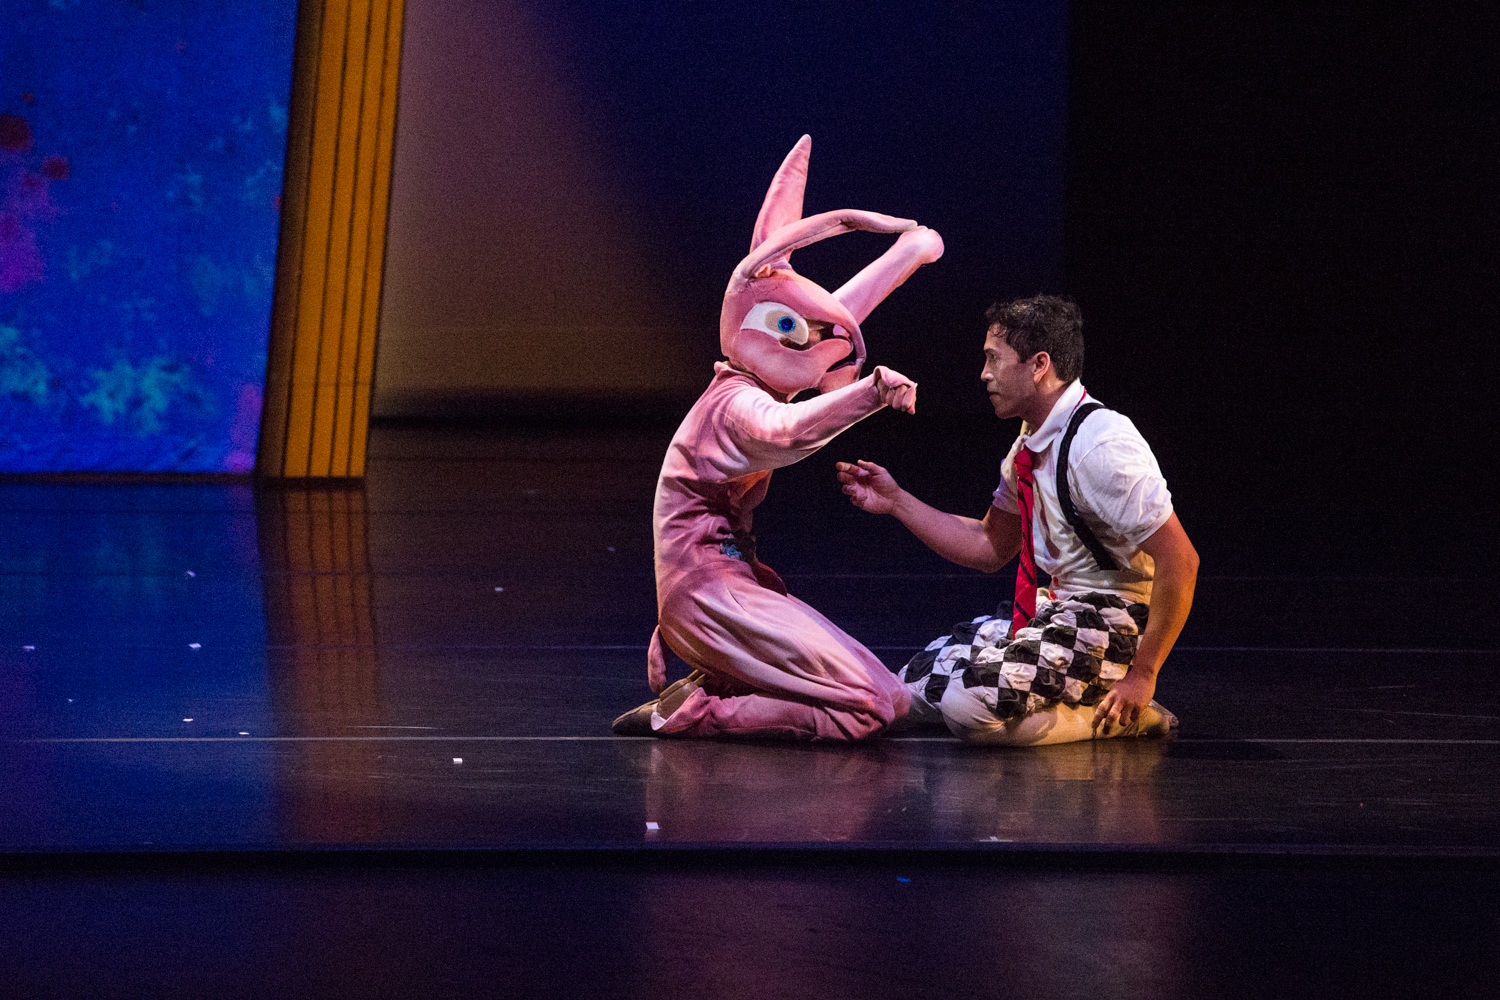 velveteen-rabbit-dance-performance.jpg